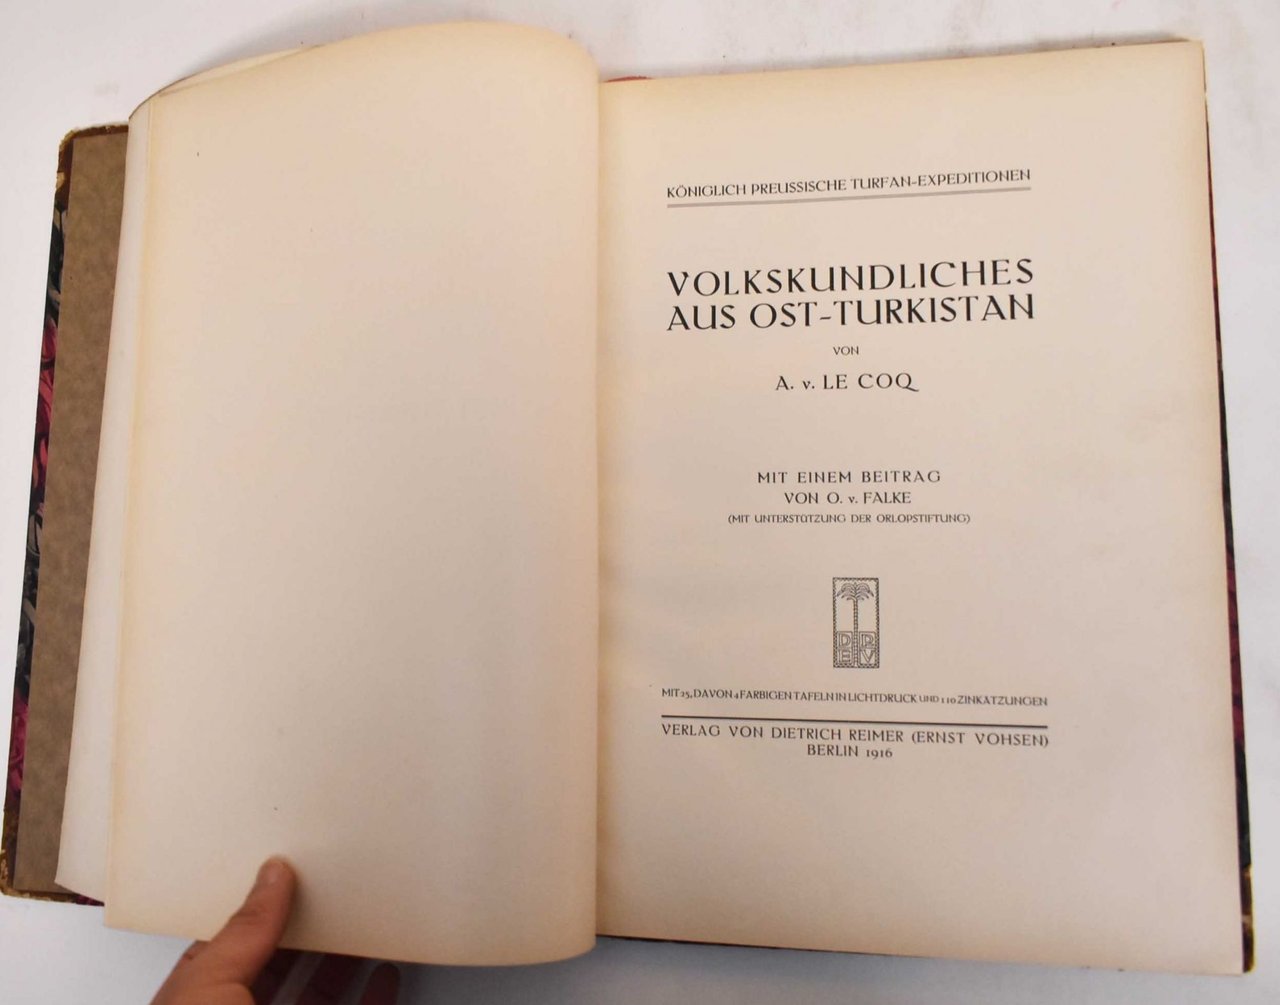 Volkskundliches aus ost-turkistan, Berlin, Dietrich Reimer, 1916